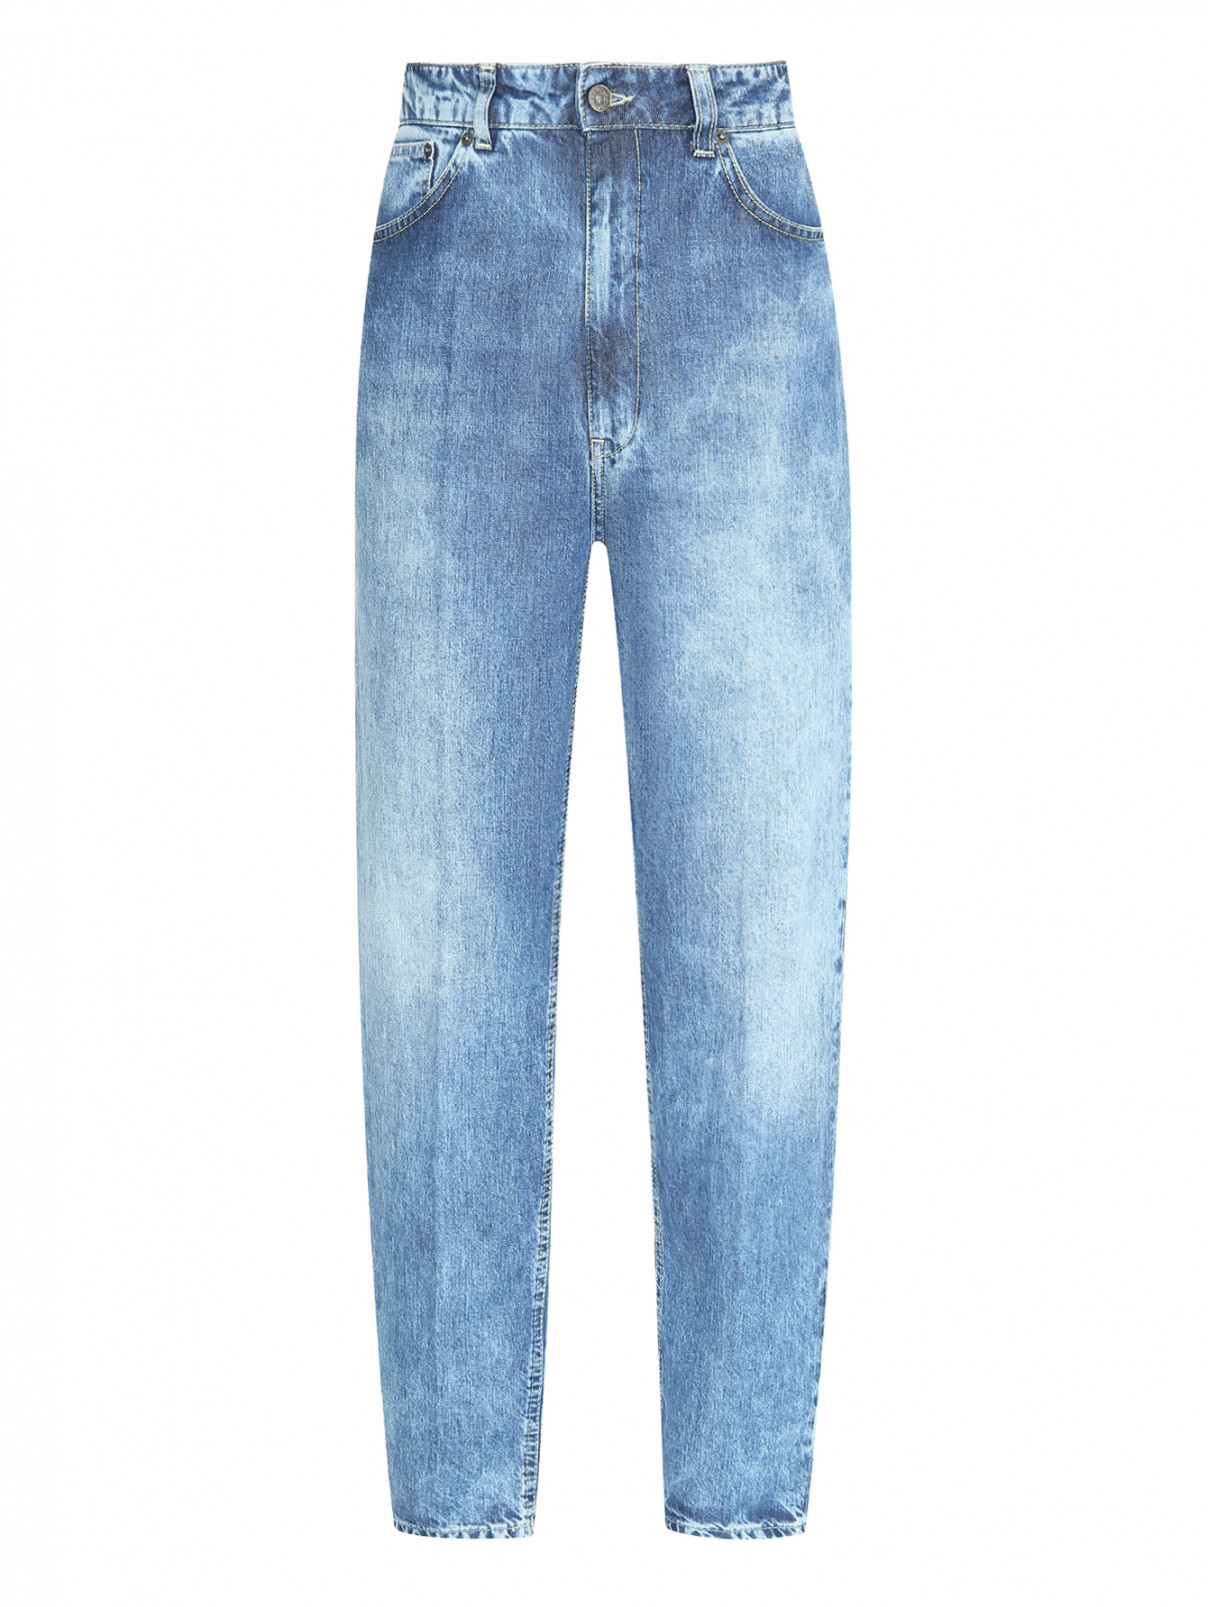 Прямые джинсы с карманами Dondup  –  Общий вид  – Цвет:  Синий